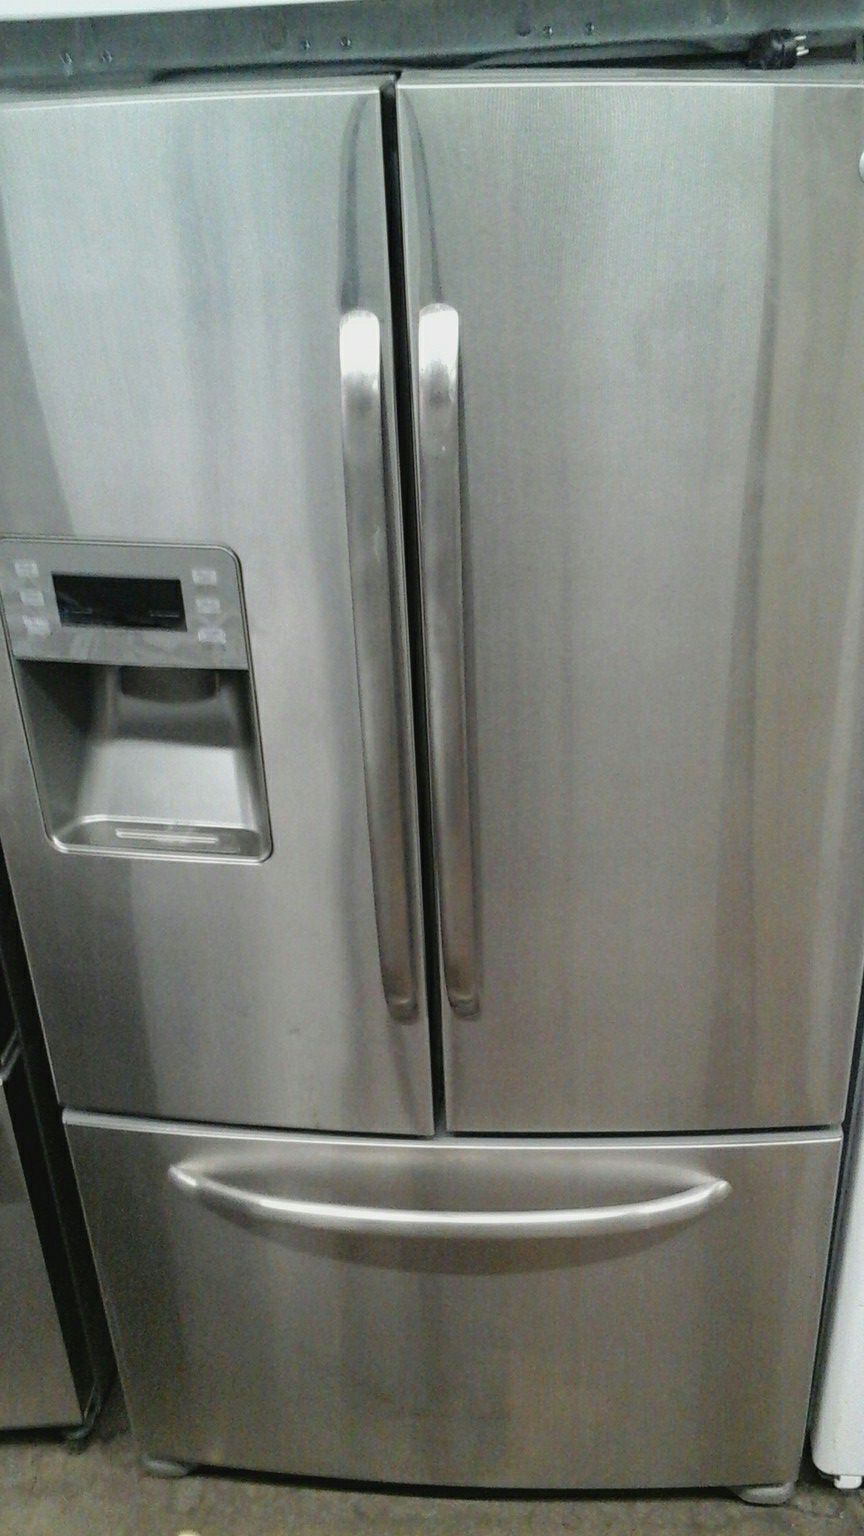 G.E. refrigerator